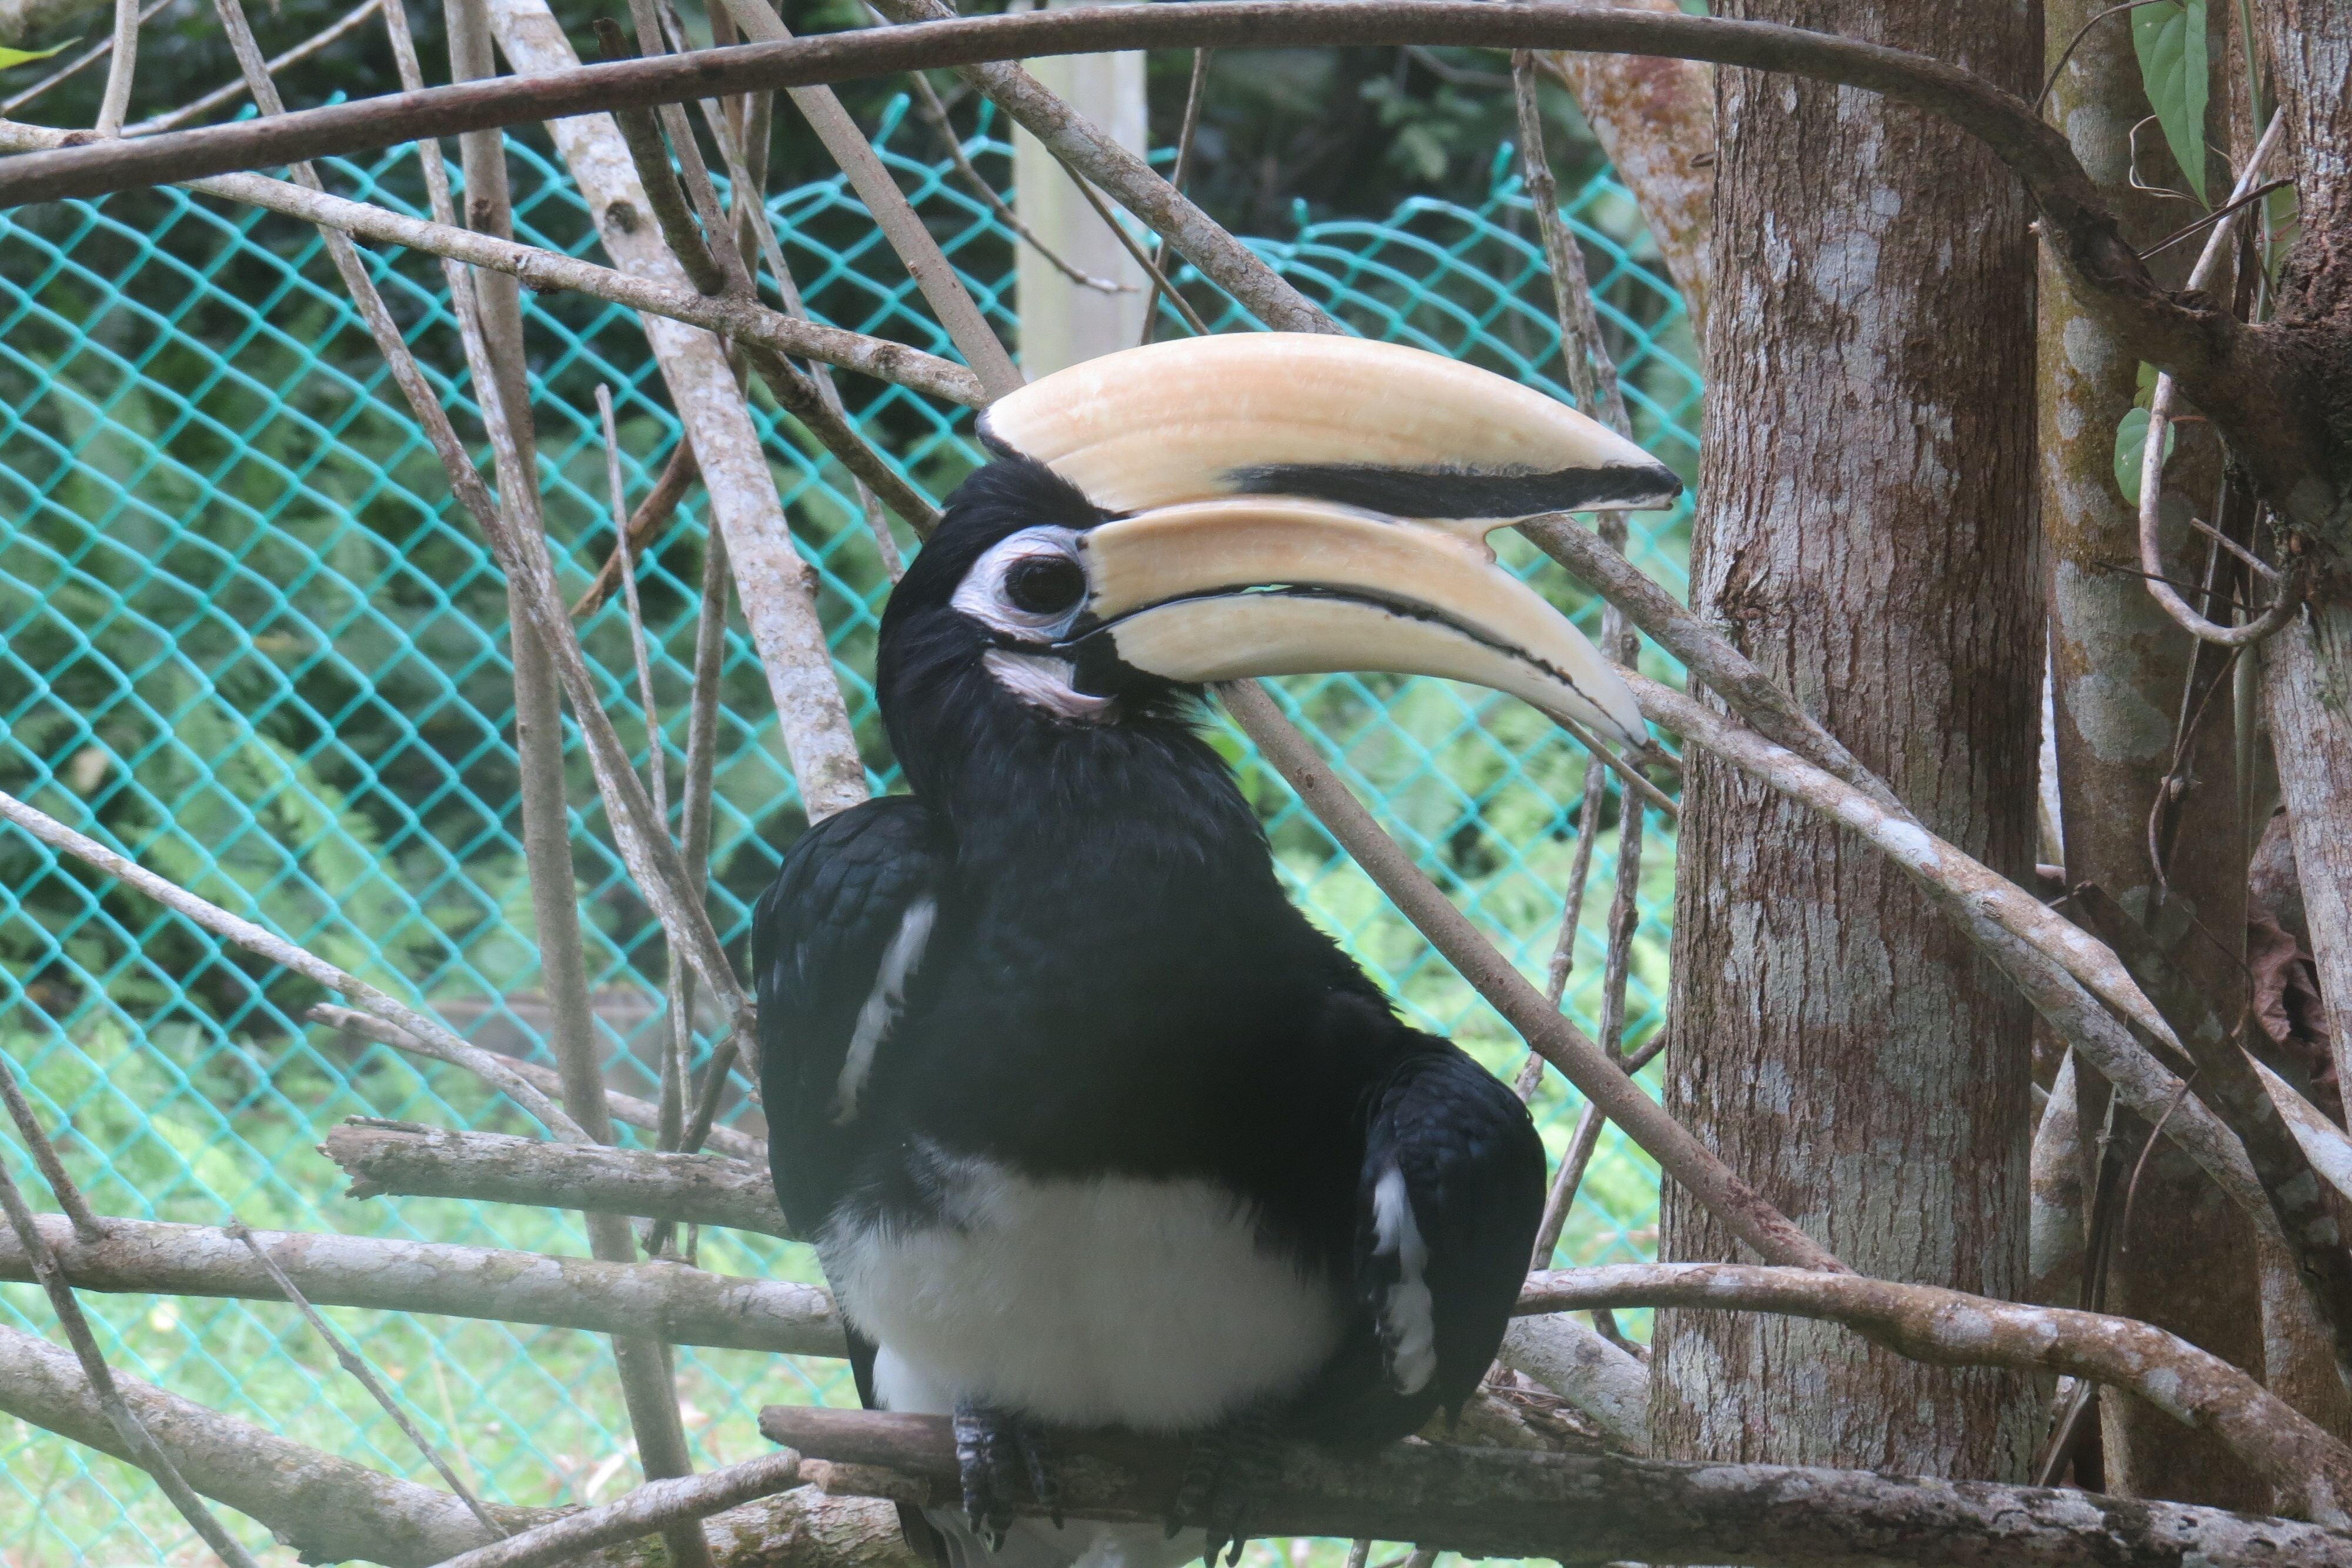 Large hornbill bird in a tree